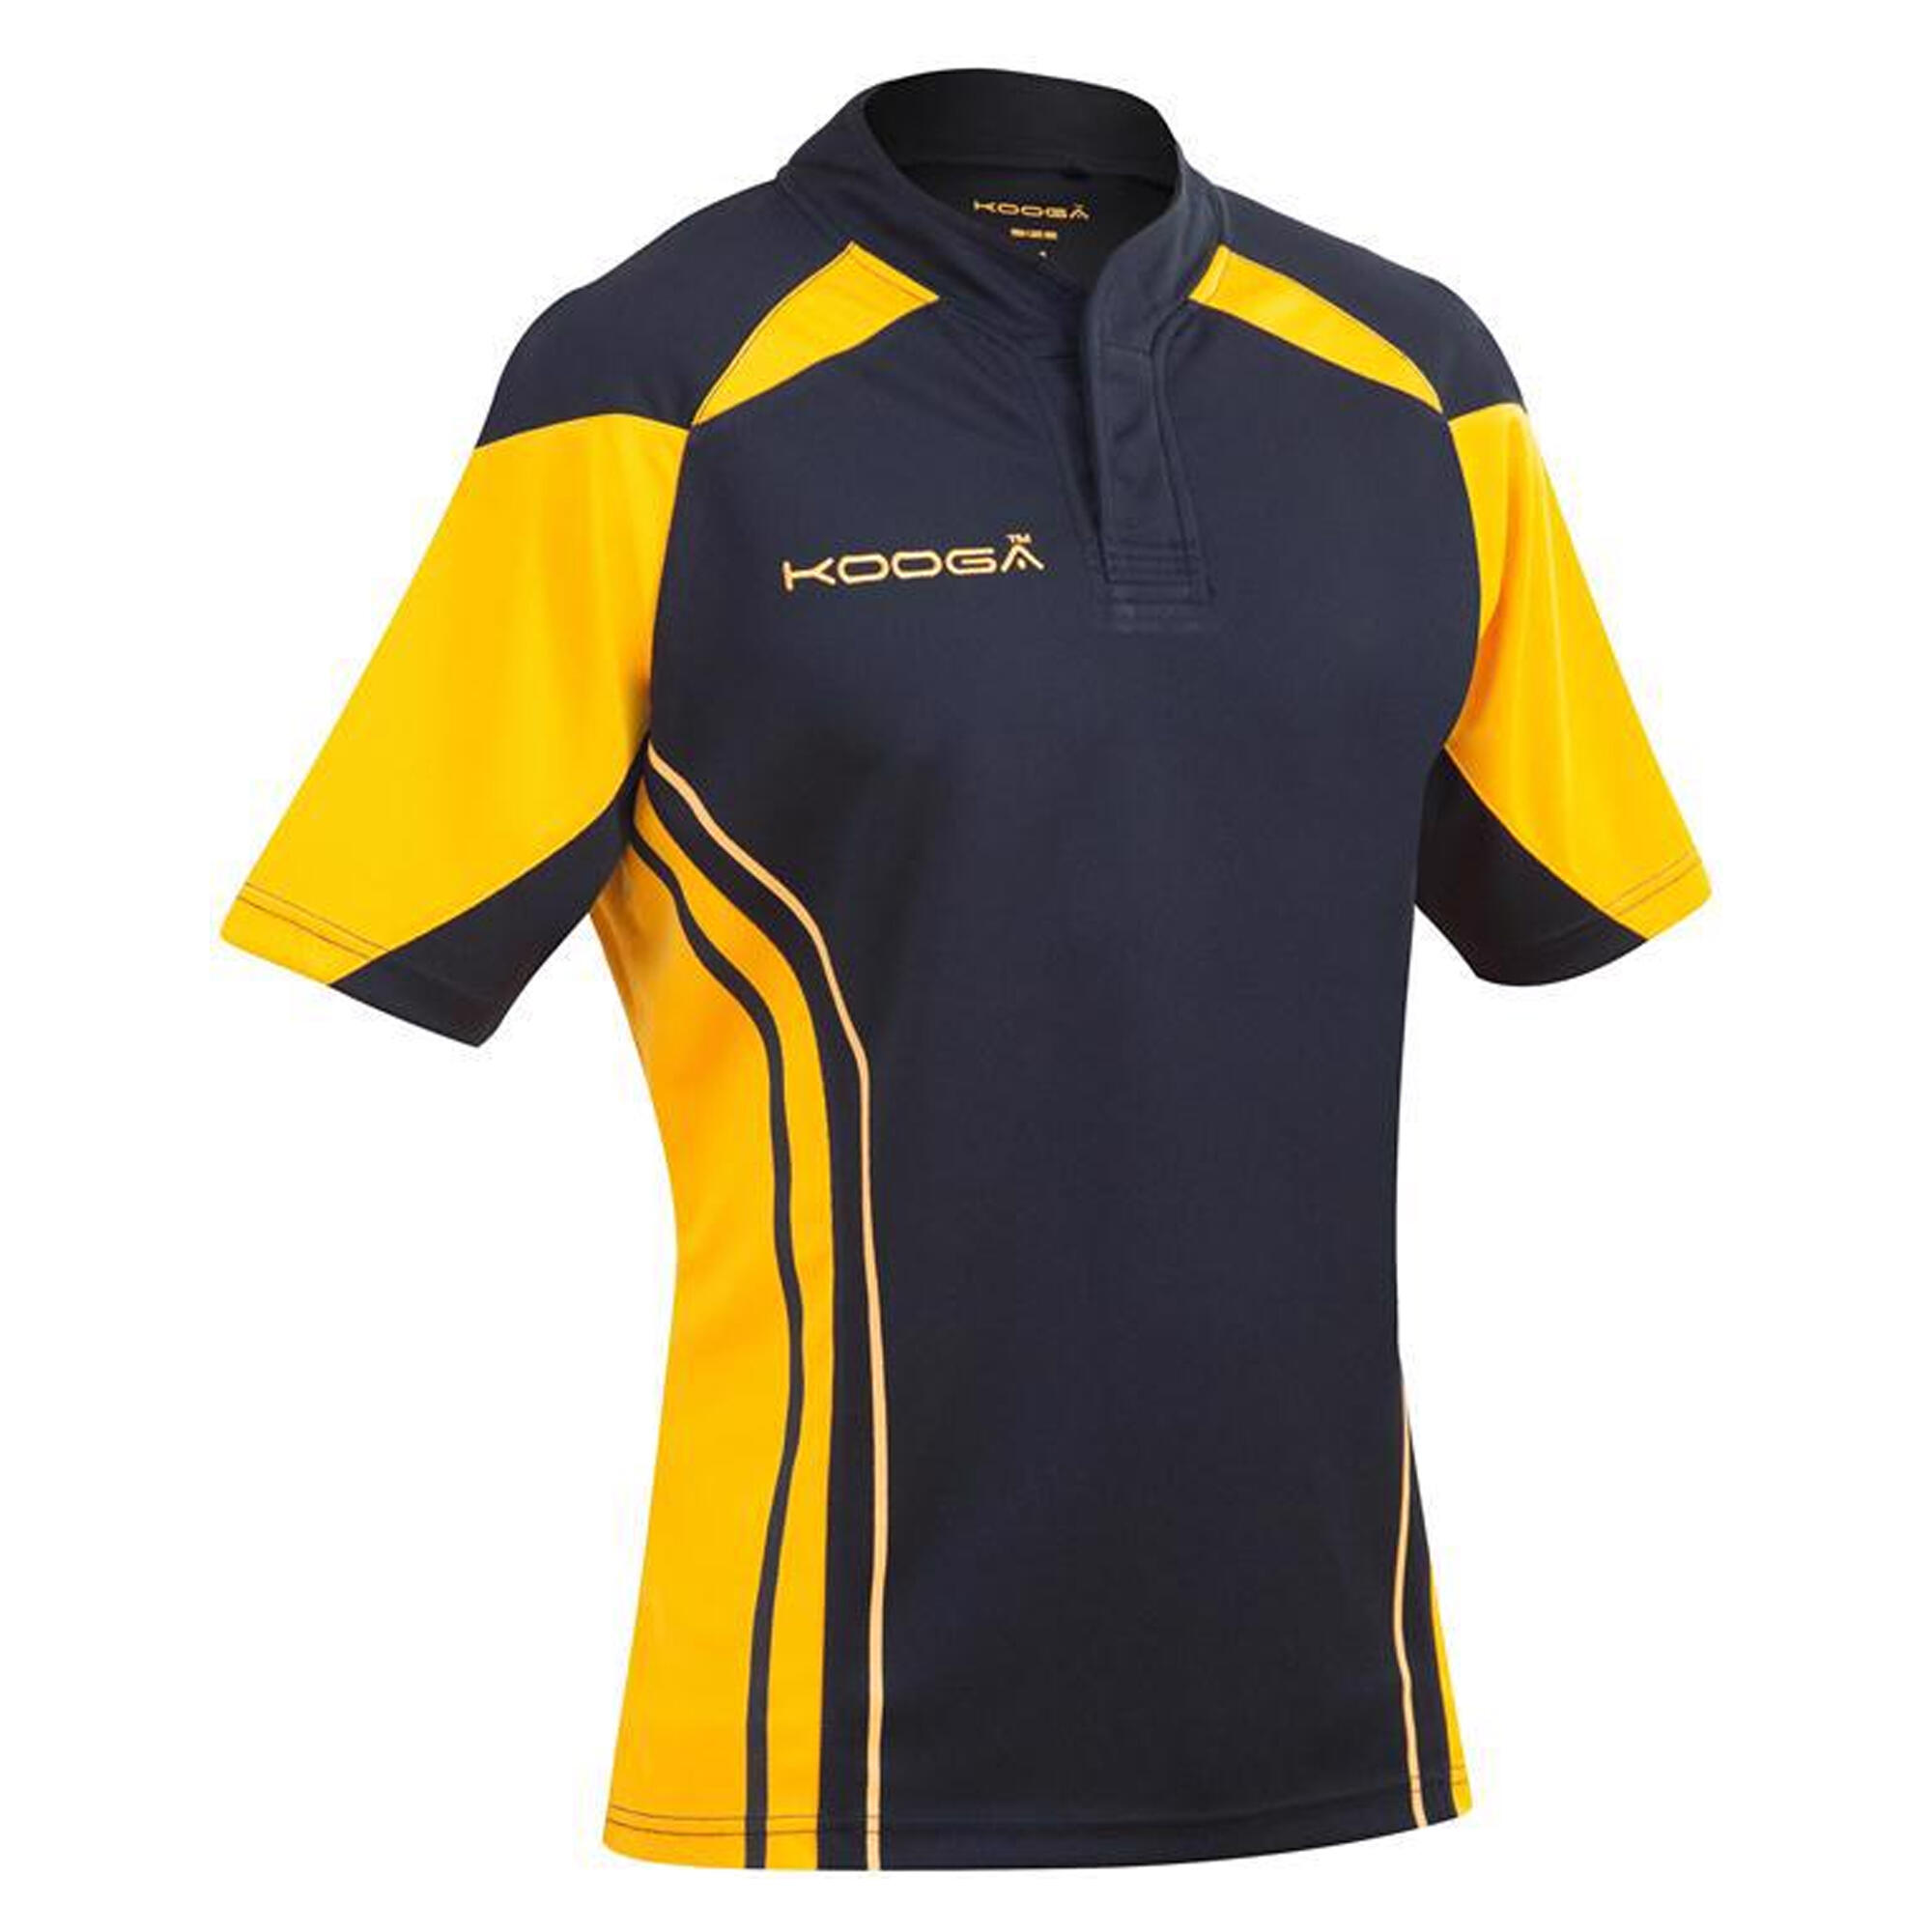 Boys Junior Stadium Match Rugby Shirt (Black/Gold) KOOGA | Decathlon